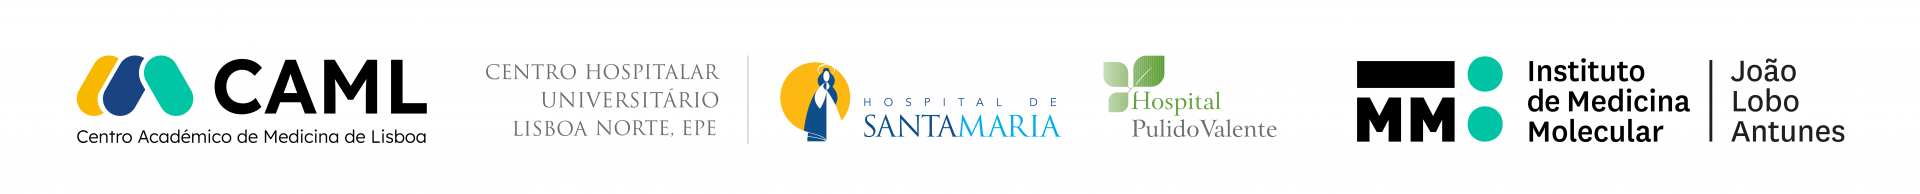 logotipos do centro hospitalar lisboa norte, da faculdade de medicina e do instituto de medicina molecular